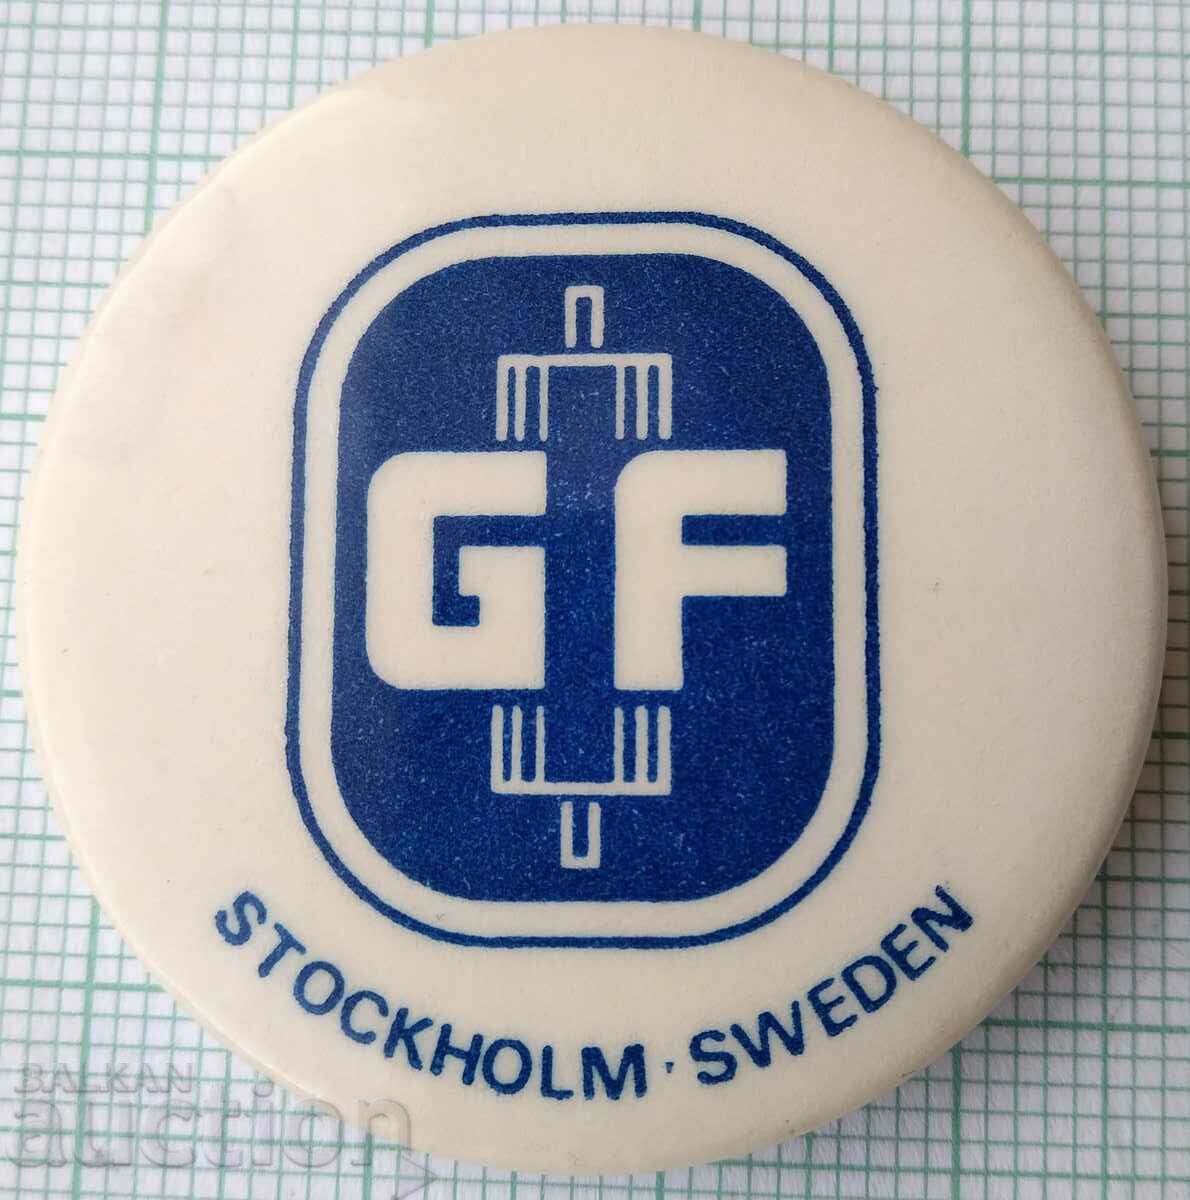 15386 Σήμα - GF Στοκχόλμη Σουηδία